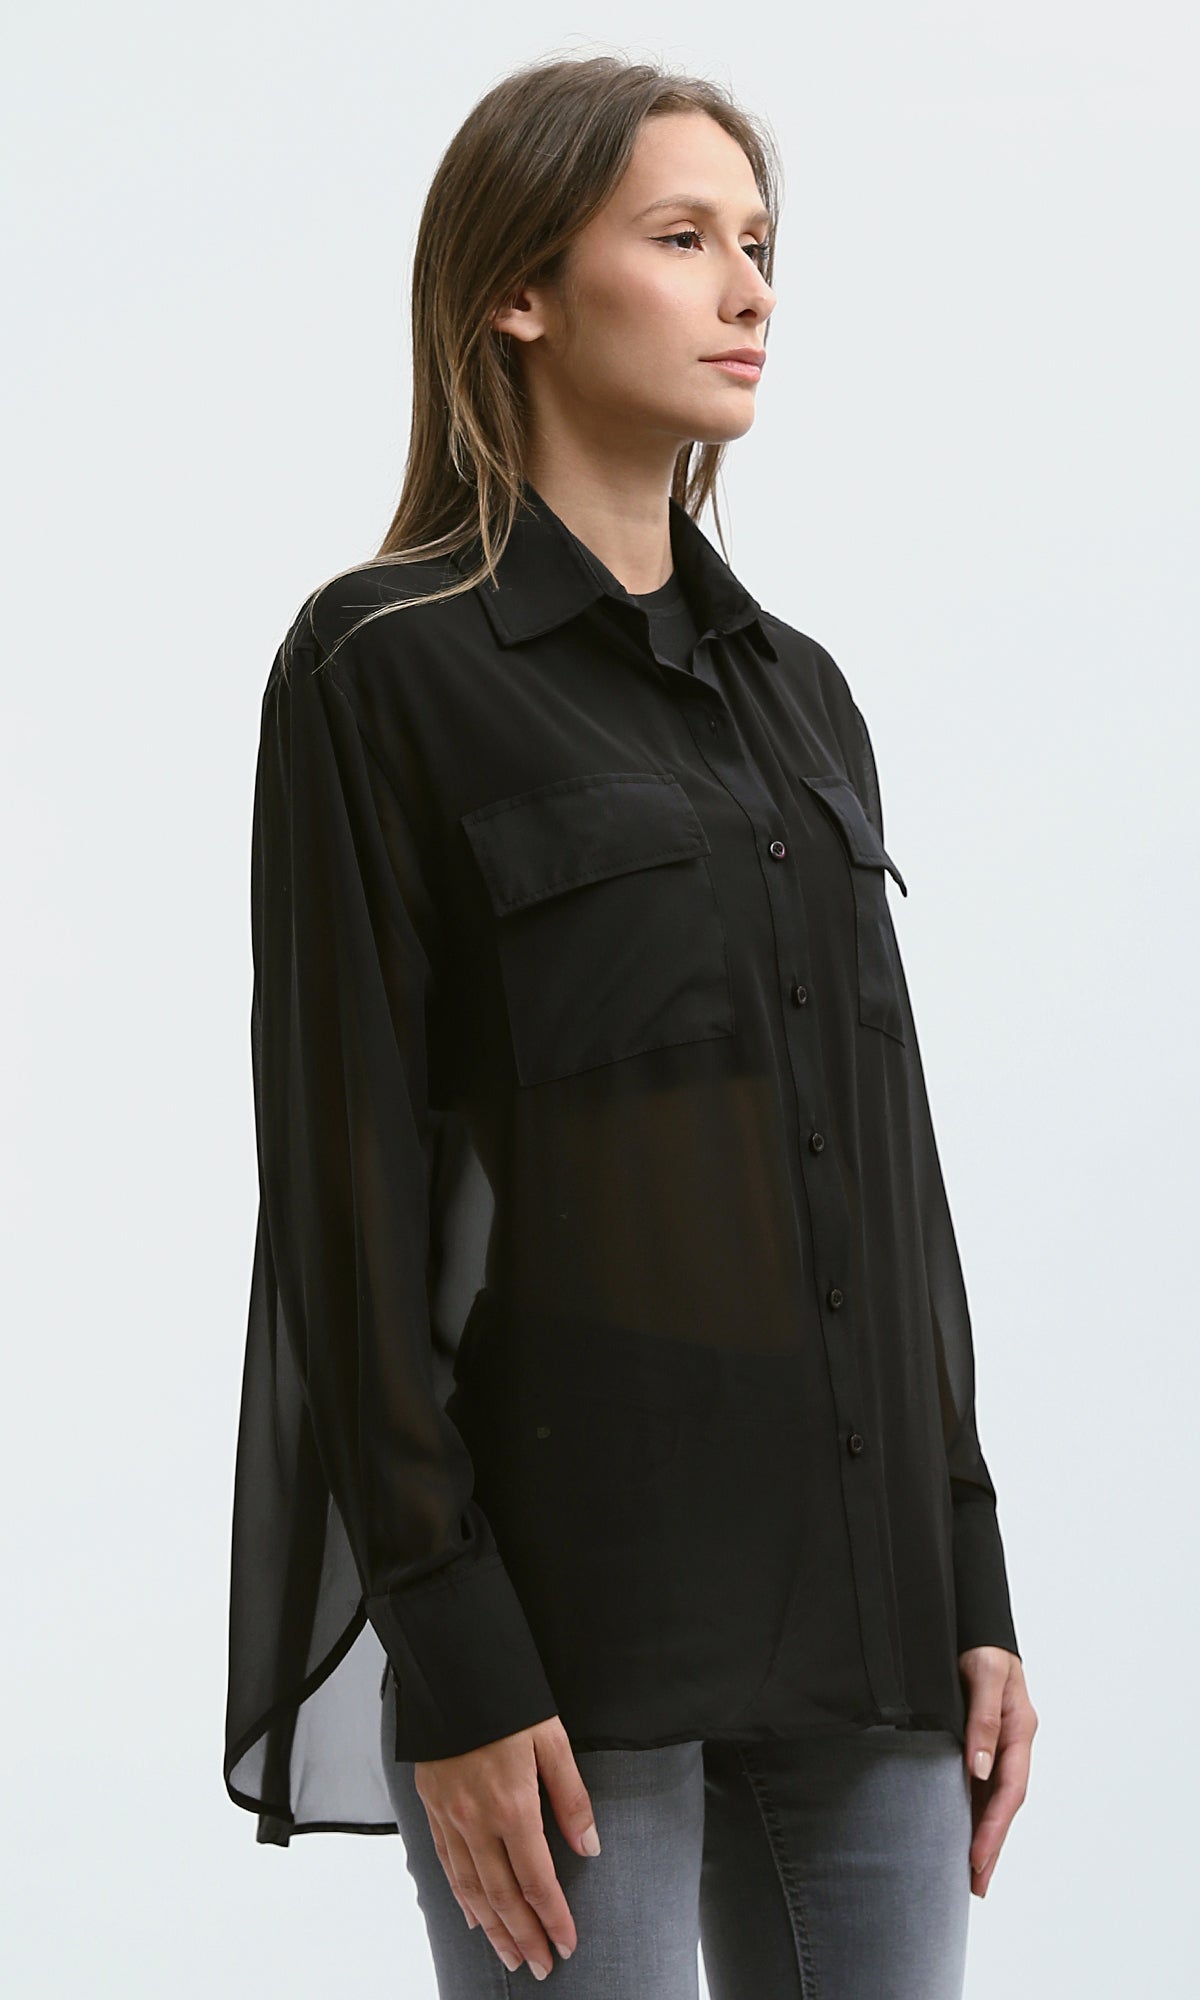 O178815 Summer Black Sheer Shirt With Front Pockets